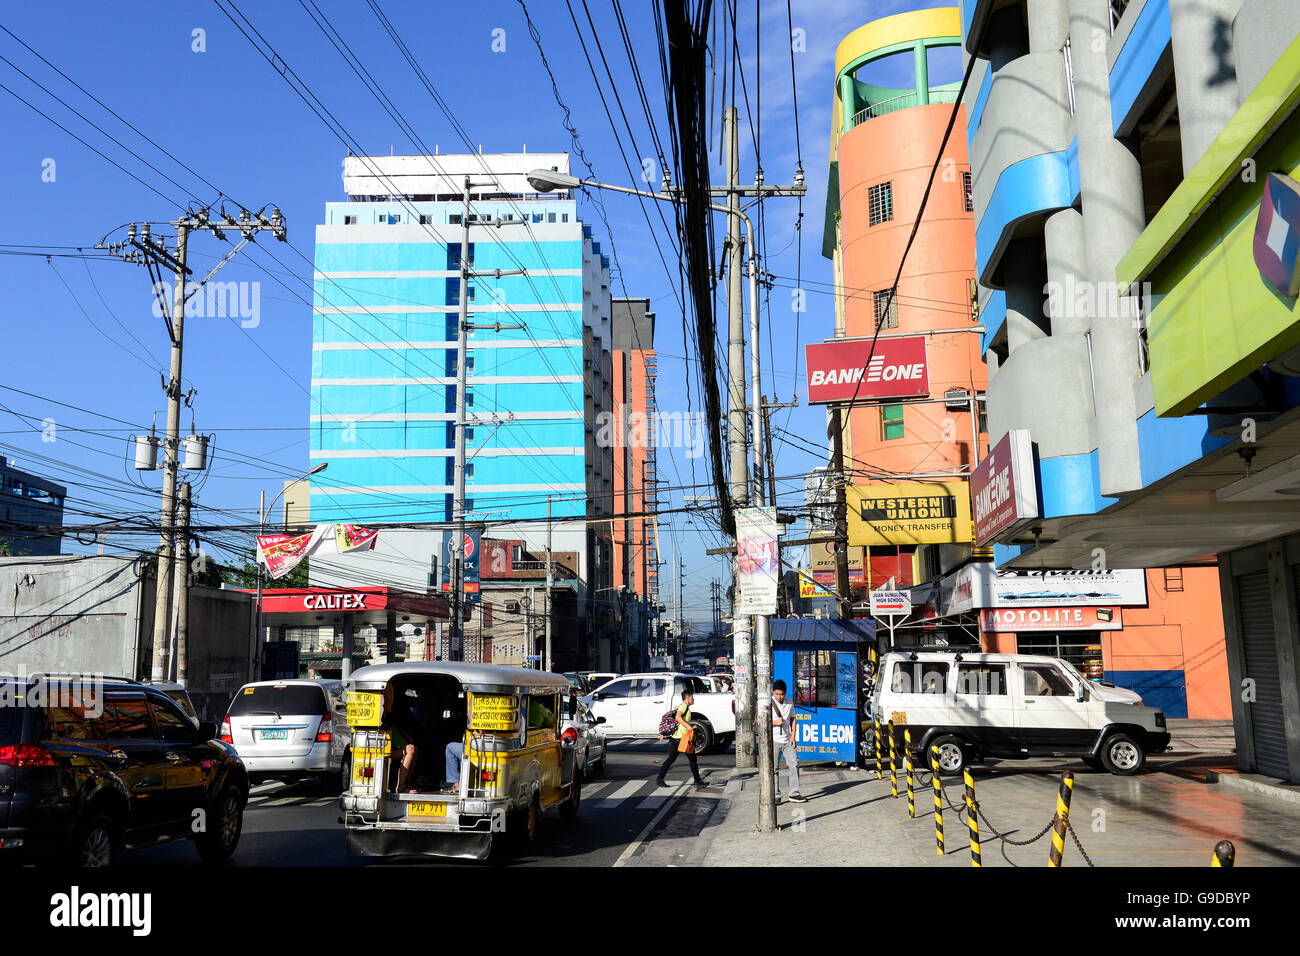 PHILIPPINES, Manille, Quezon City, jeepney, nouveau réseau électrique et d'édifices à appartements Banque D'Images